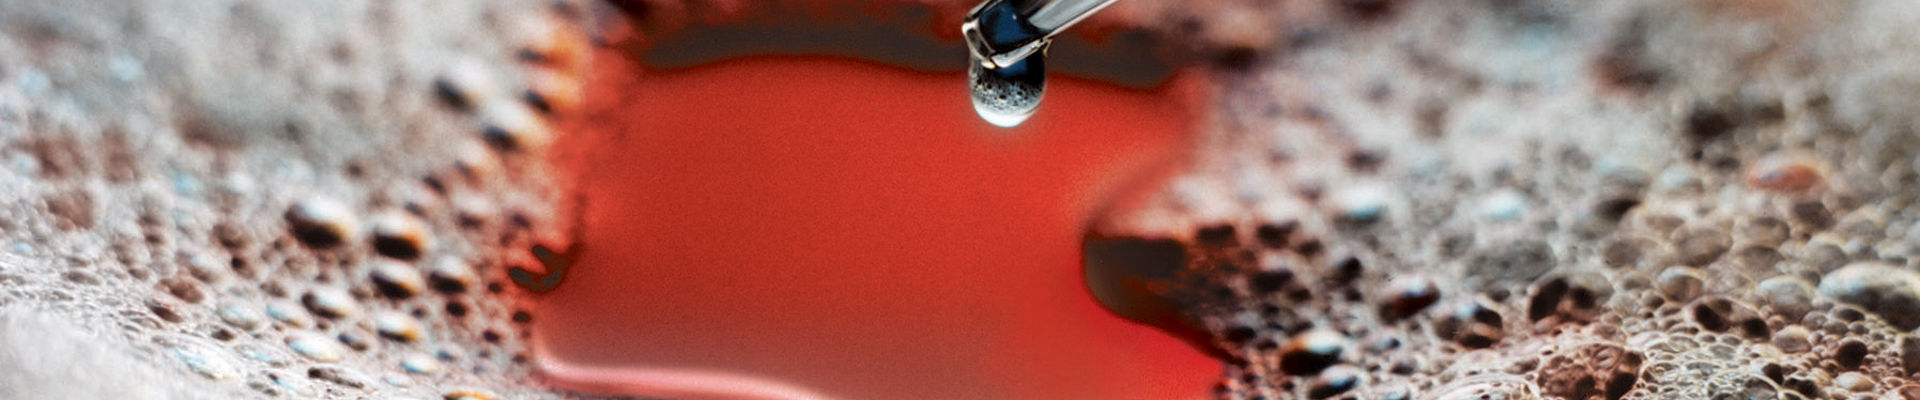 Conta-gotas gotejando antiespumante de silicone em líquido